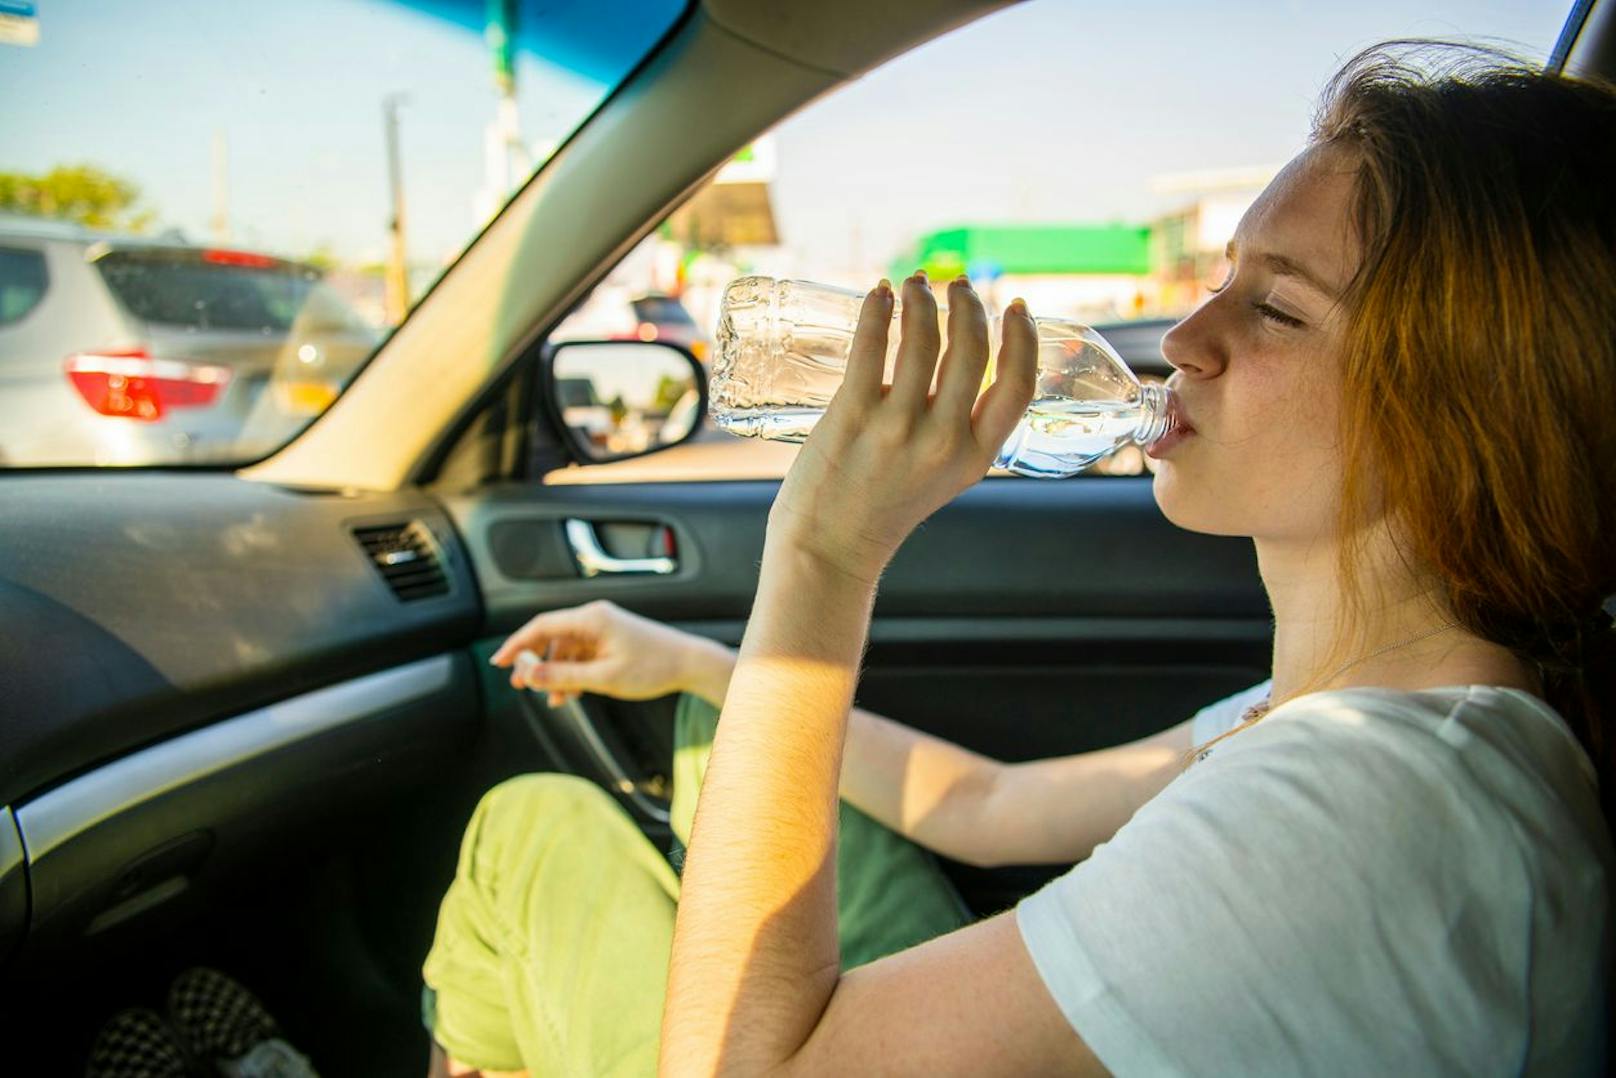 Bei längeren Autofahrten im Sommer sollte man unbedingt auf eine regelmäßige Flüssigkeitszufuhr achten. (Symbolbild)&nbsp;